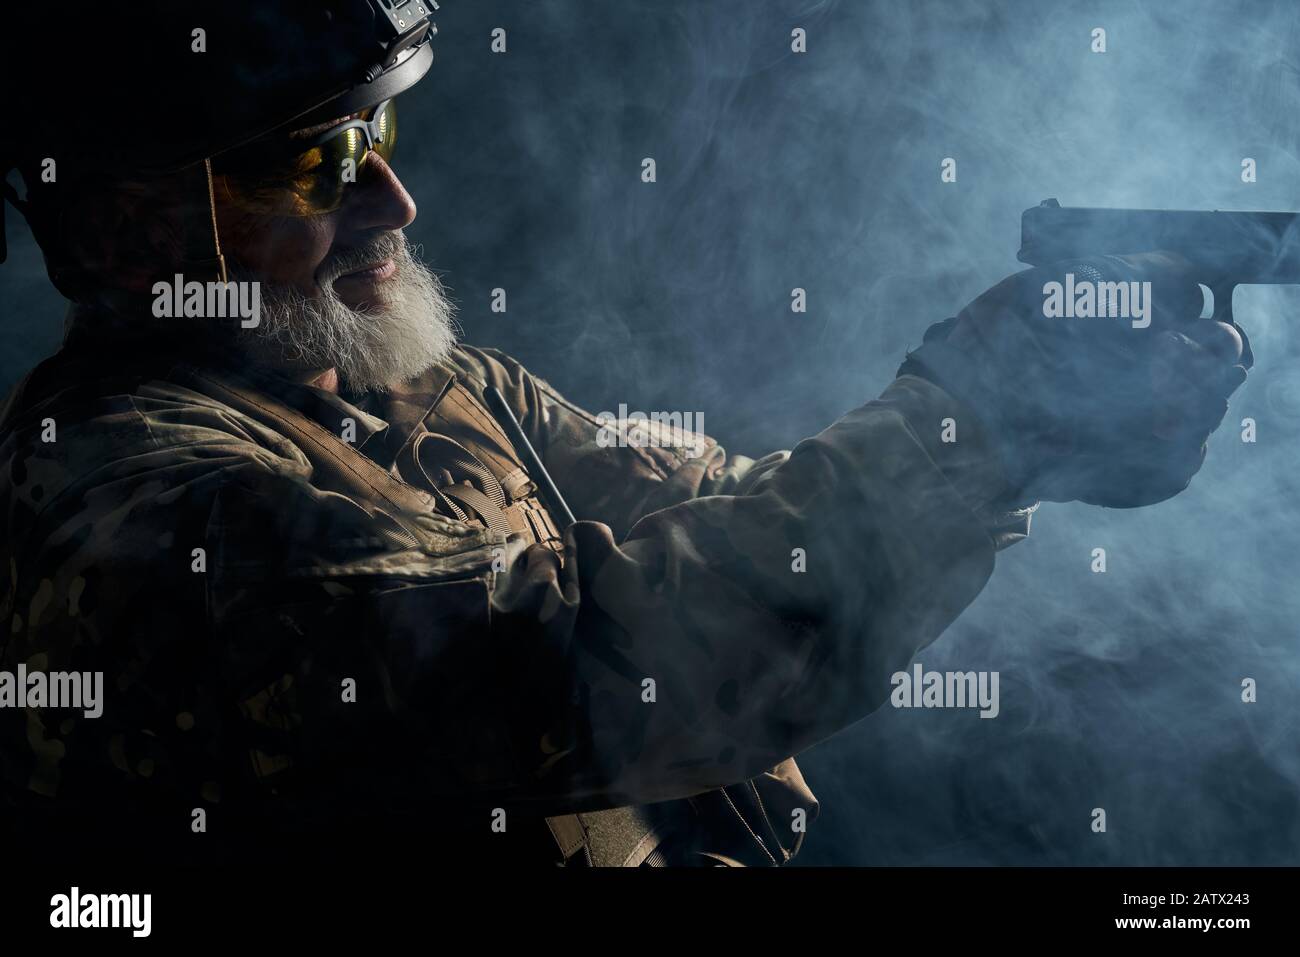 Vista laterale del vecchio ufficiale militare che detiene una piccola pistola e mira. Ritratto di veterano bearded in uniforme camouflage e scatto del casco in atmosfera scura fumosa. Concetto di militare. Foto Stock